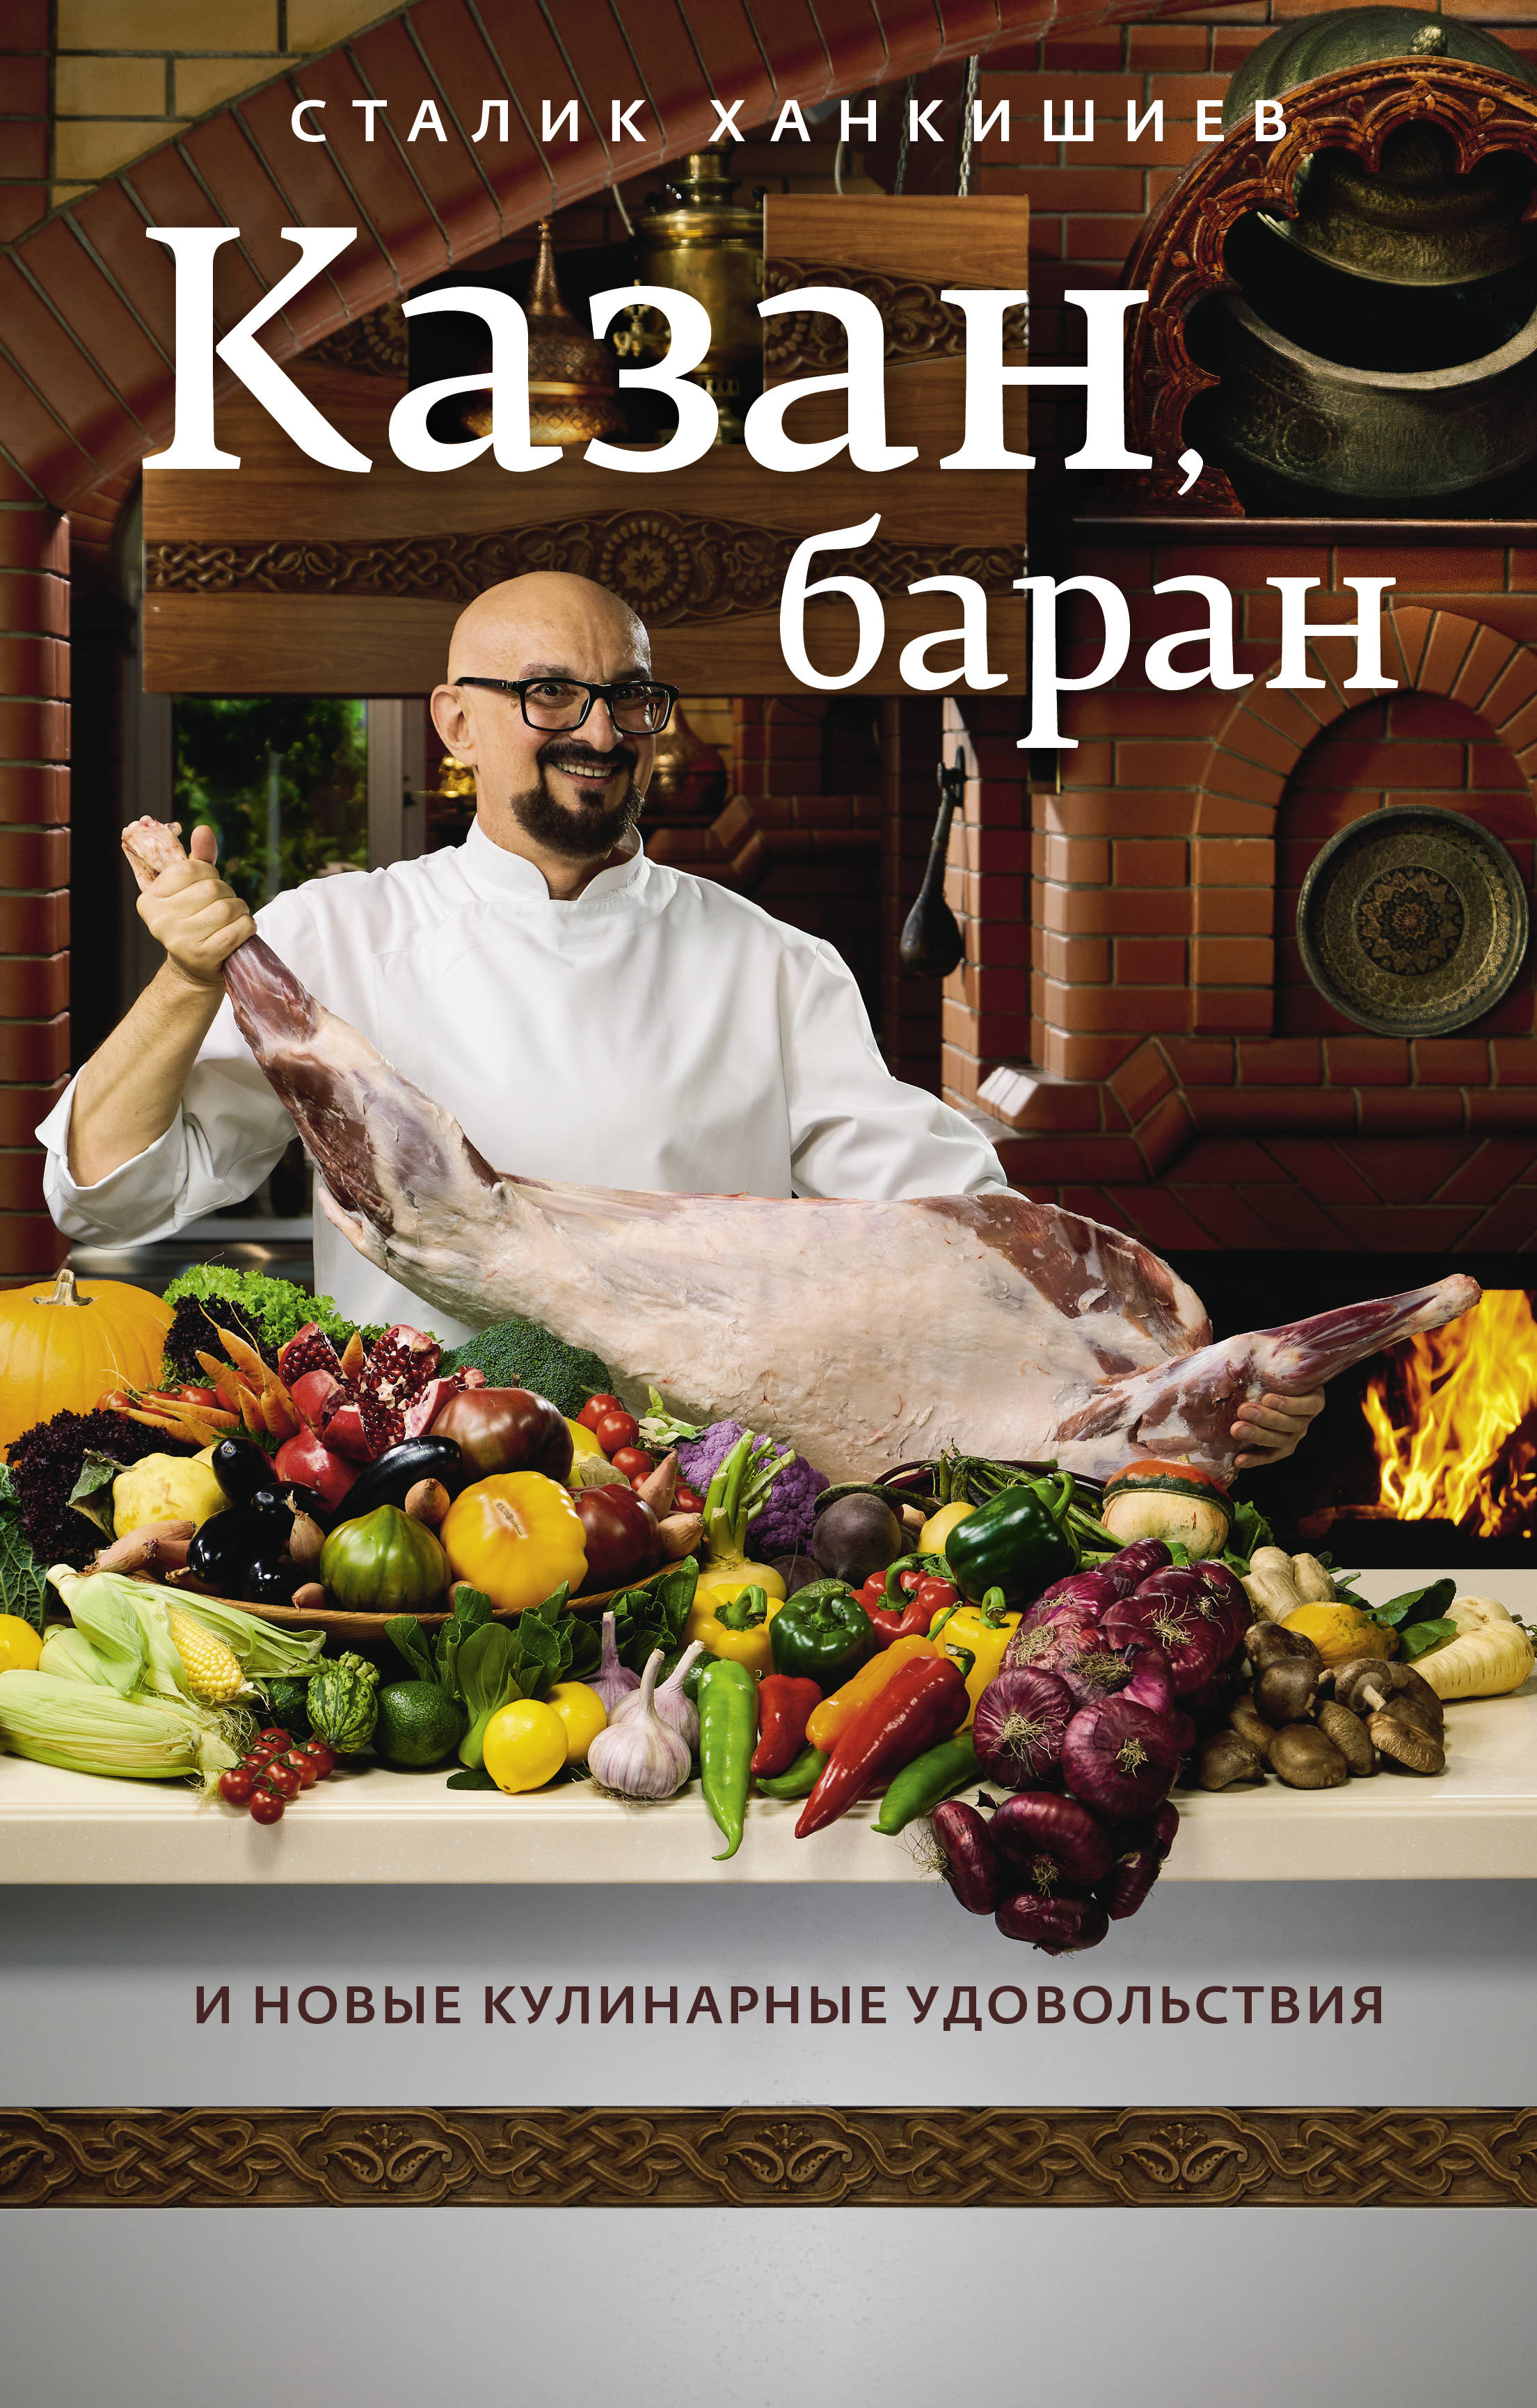 Ханкишиев С. Казан, баран и новые кулинарные удовольствия 